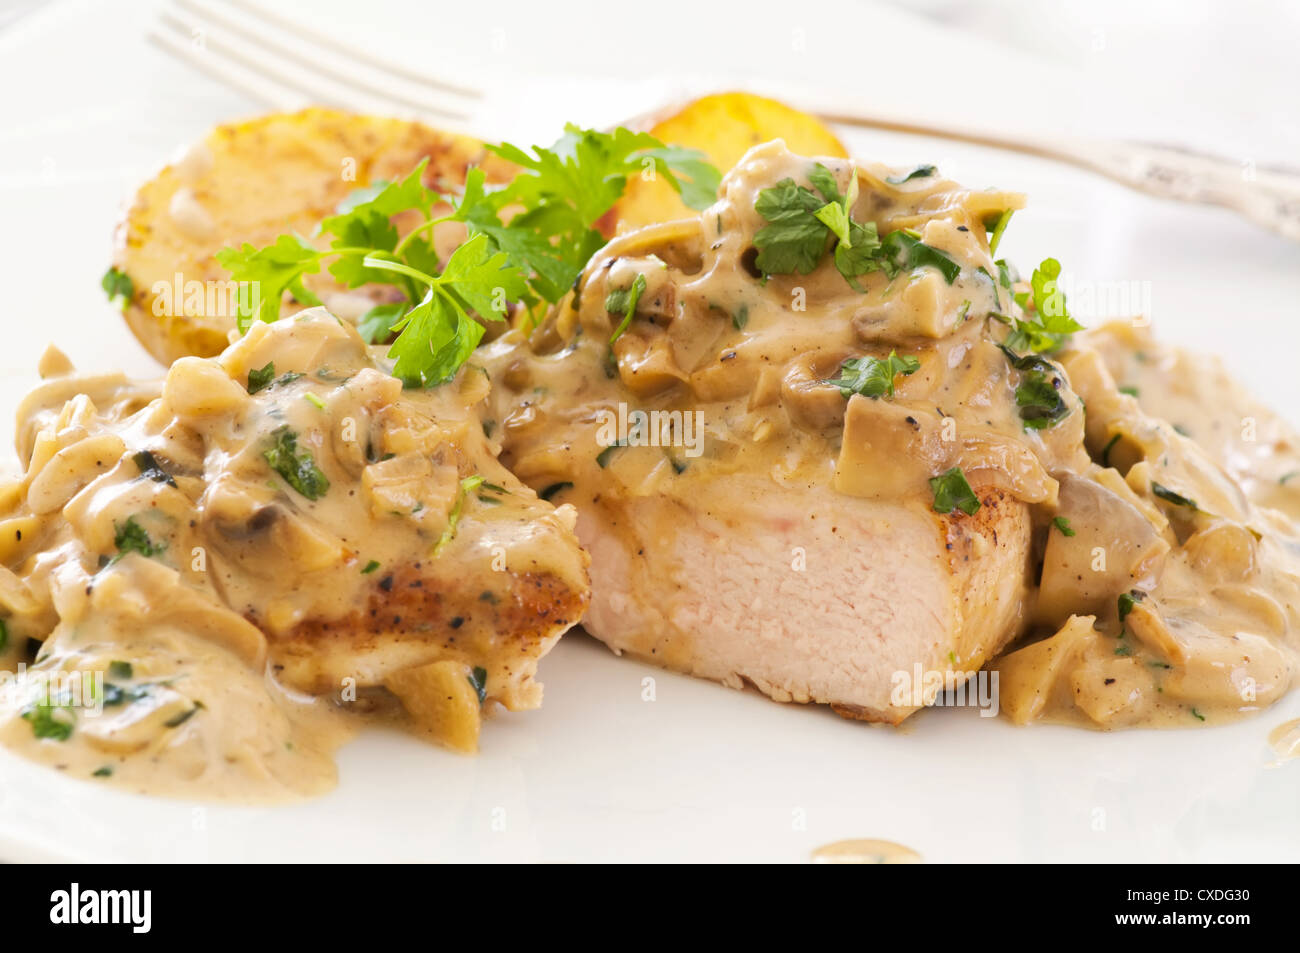 Chicken steak with mushroom cream sauce Stock Photo